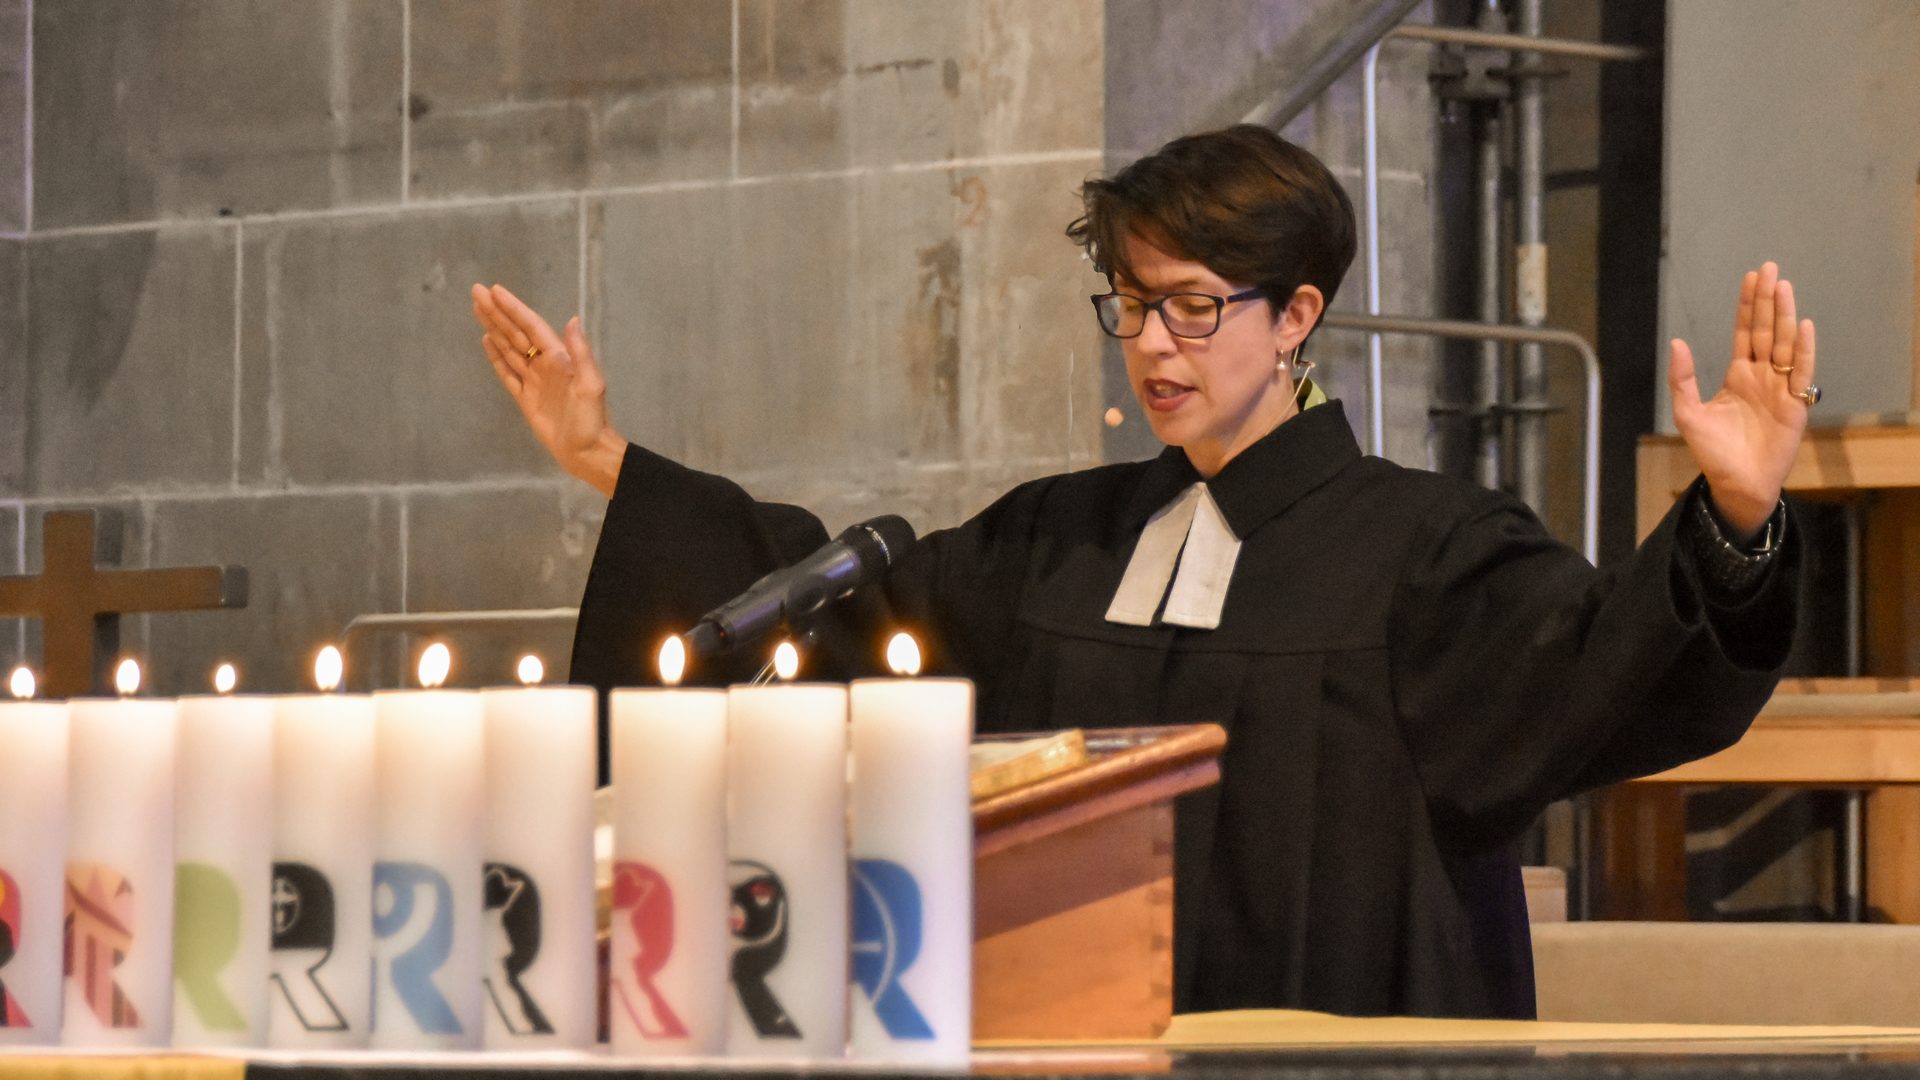 La pasteure Sabine Brändlin, membre du Conseil de la FEPS, bénit l'assemblée réunie à Berne pour les 500 ans de la Réforme (photo Maurice Page) 